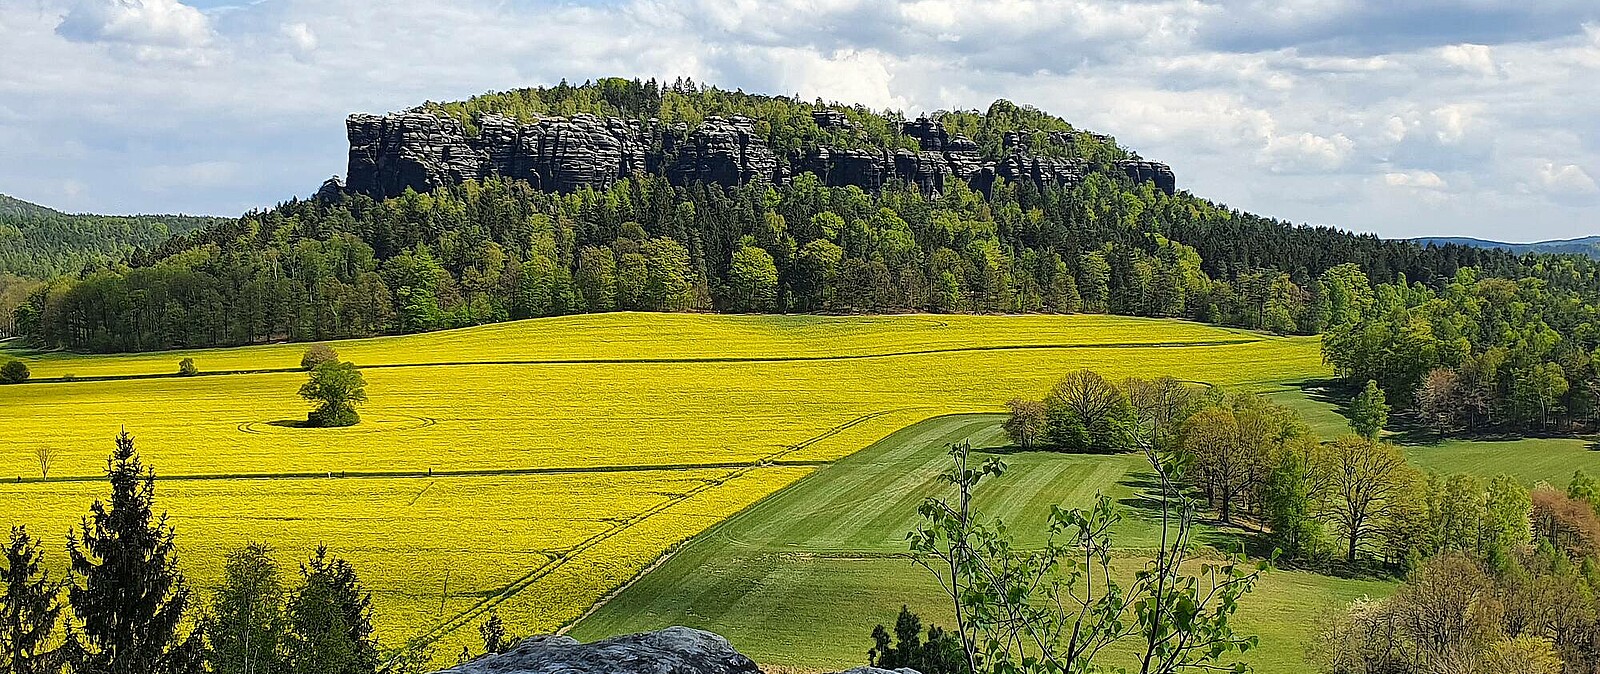 Entspannter Spaziergang oder anspruchsvolle Wanderung - Sie entscheiden, was Sie auf Ihrer geführten Tour durch die Sächsische Schweiz erleben wollen. Inkl. kleiner Kräuterkunde zu den heimischen Pflanzen der Region.